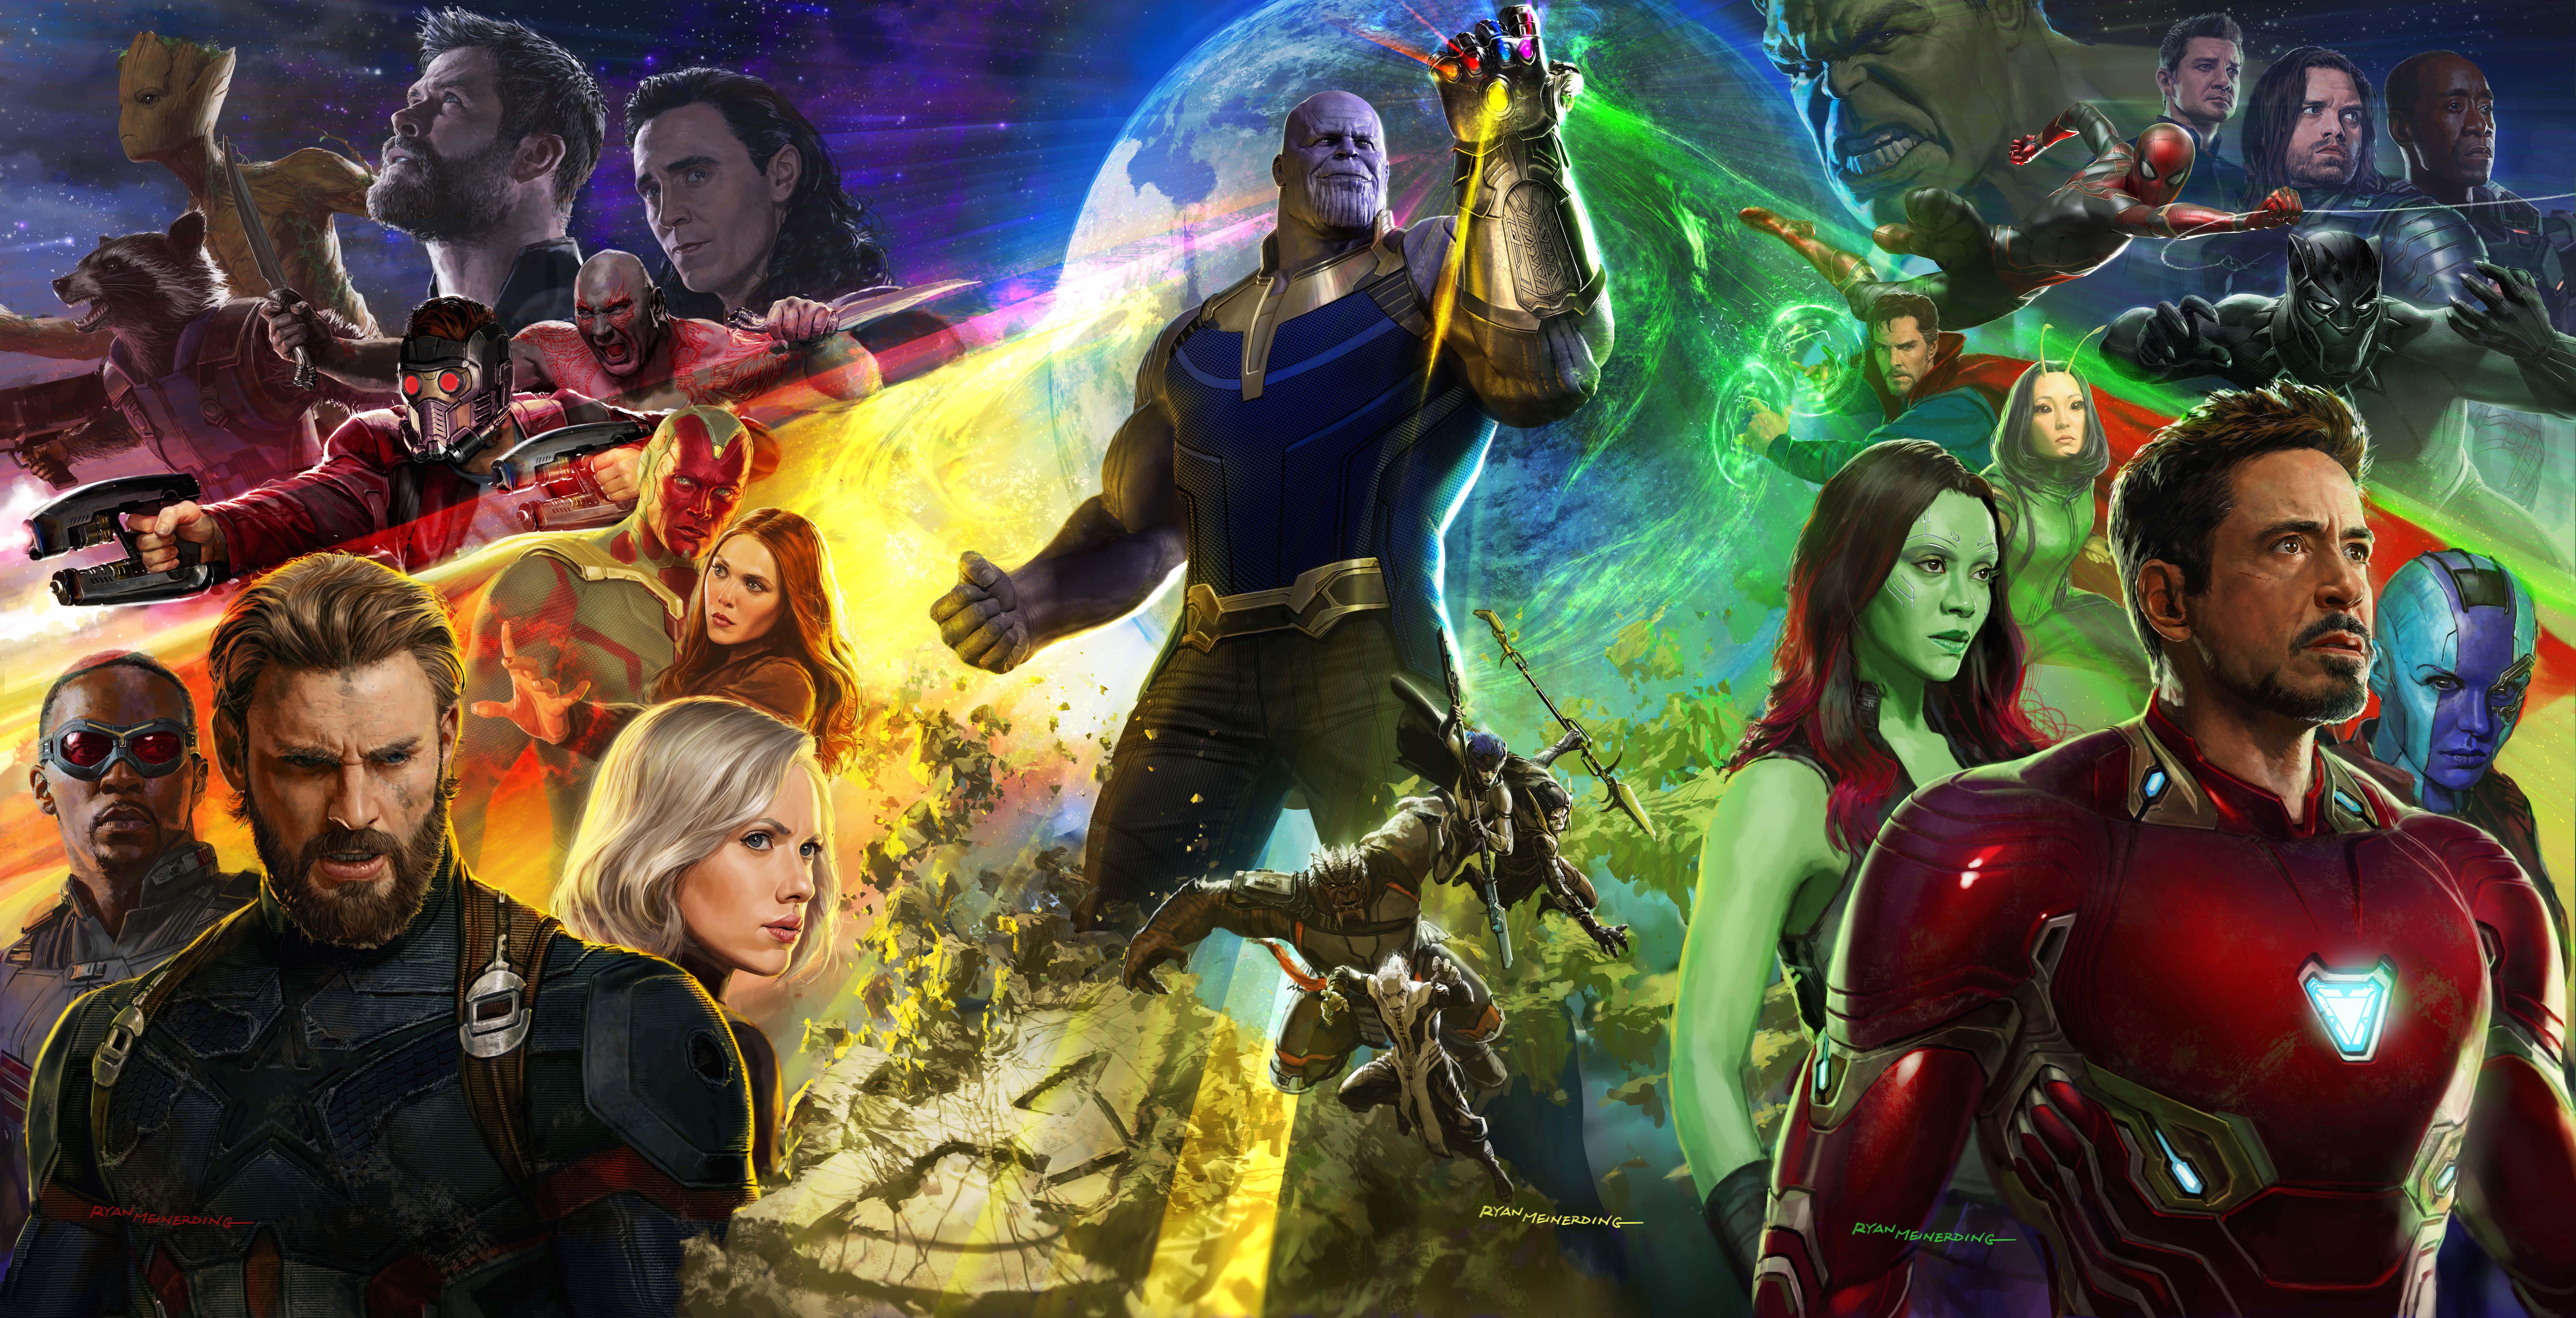 15+] Avengers: Infinity War 4K Wallpapers - WallpaperSafari